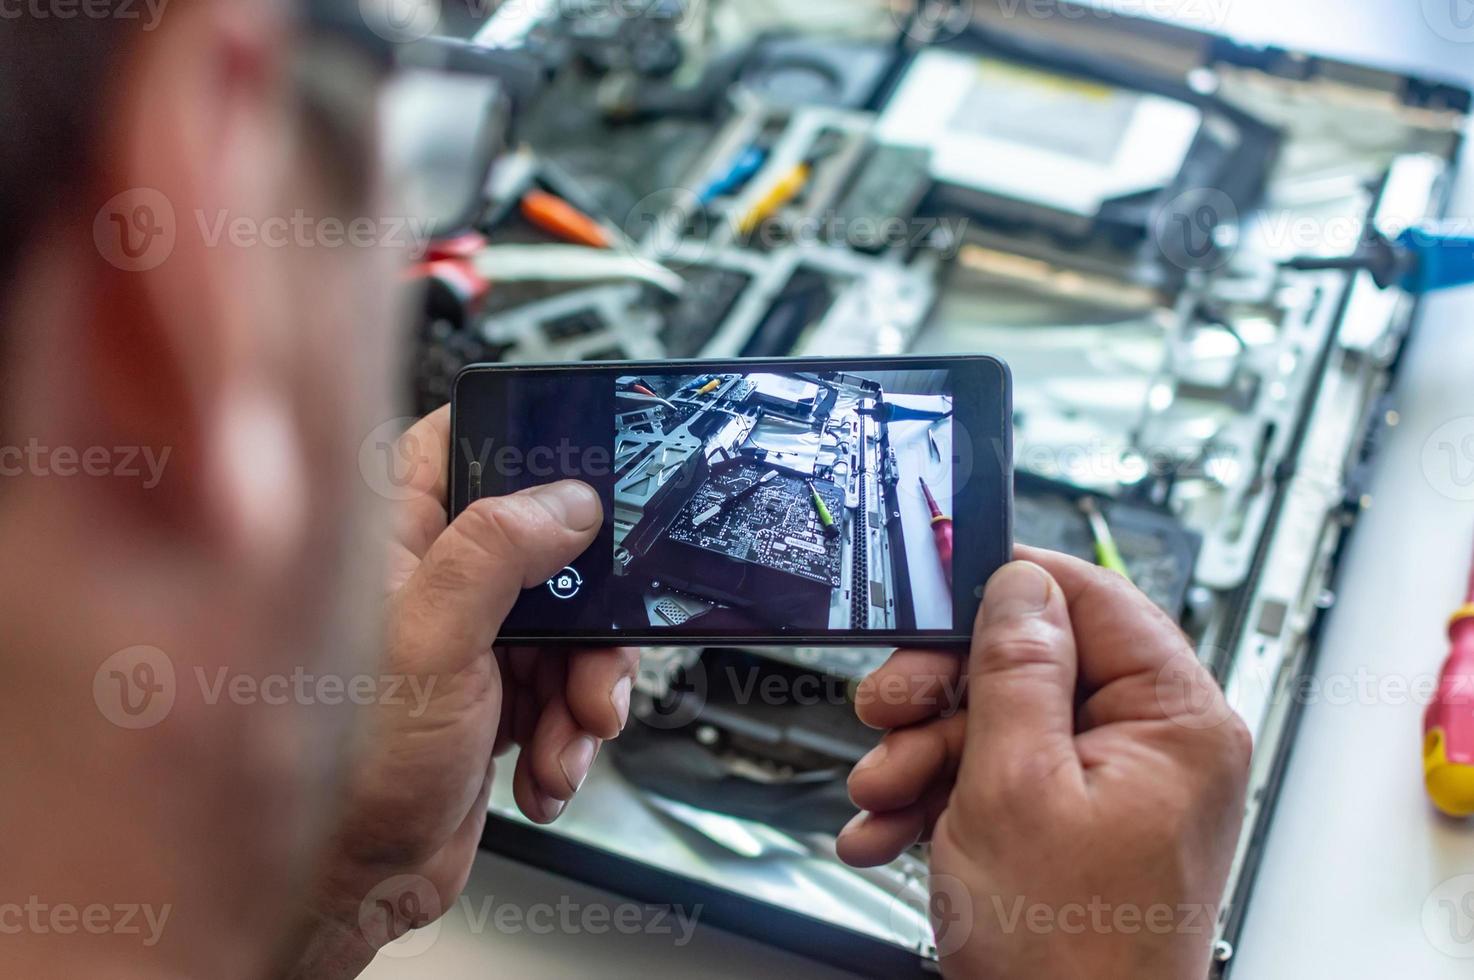 un homme répare un ordinateur, soude une carte, répare l'électronique et les technologies modernes photo